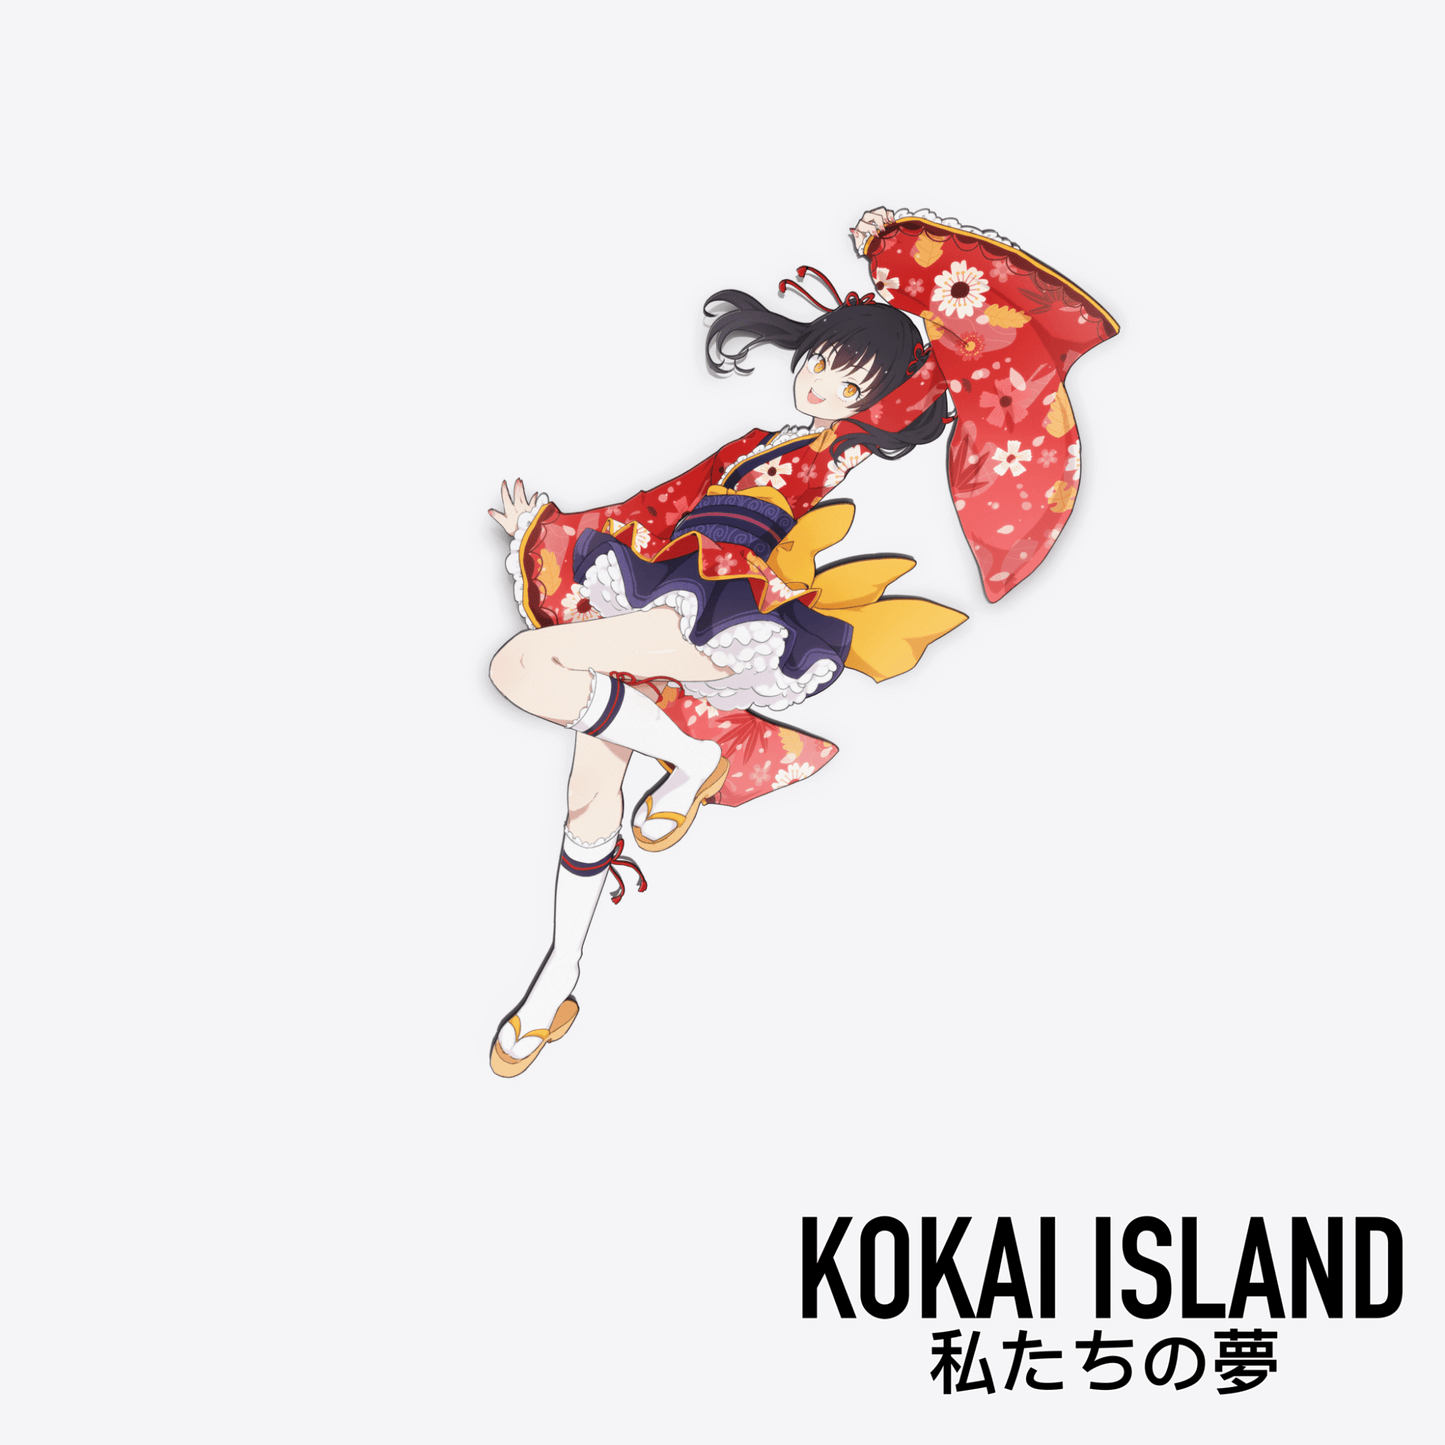 Cat Girl Kimono DecalDecalKokai Island